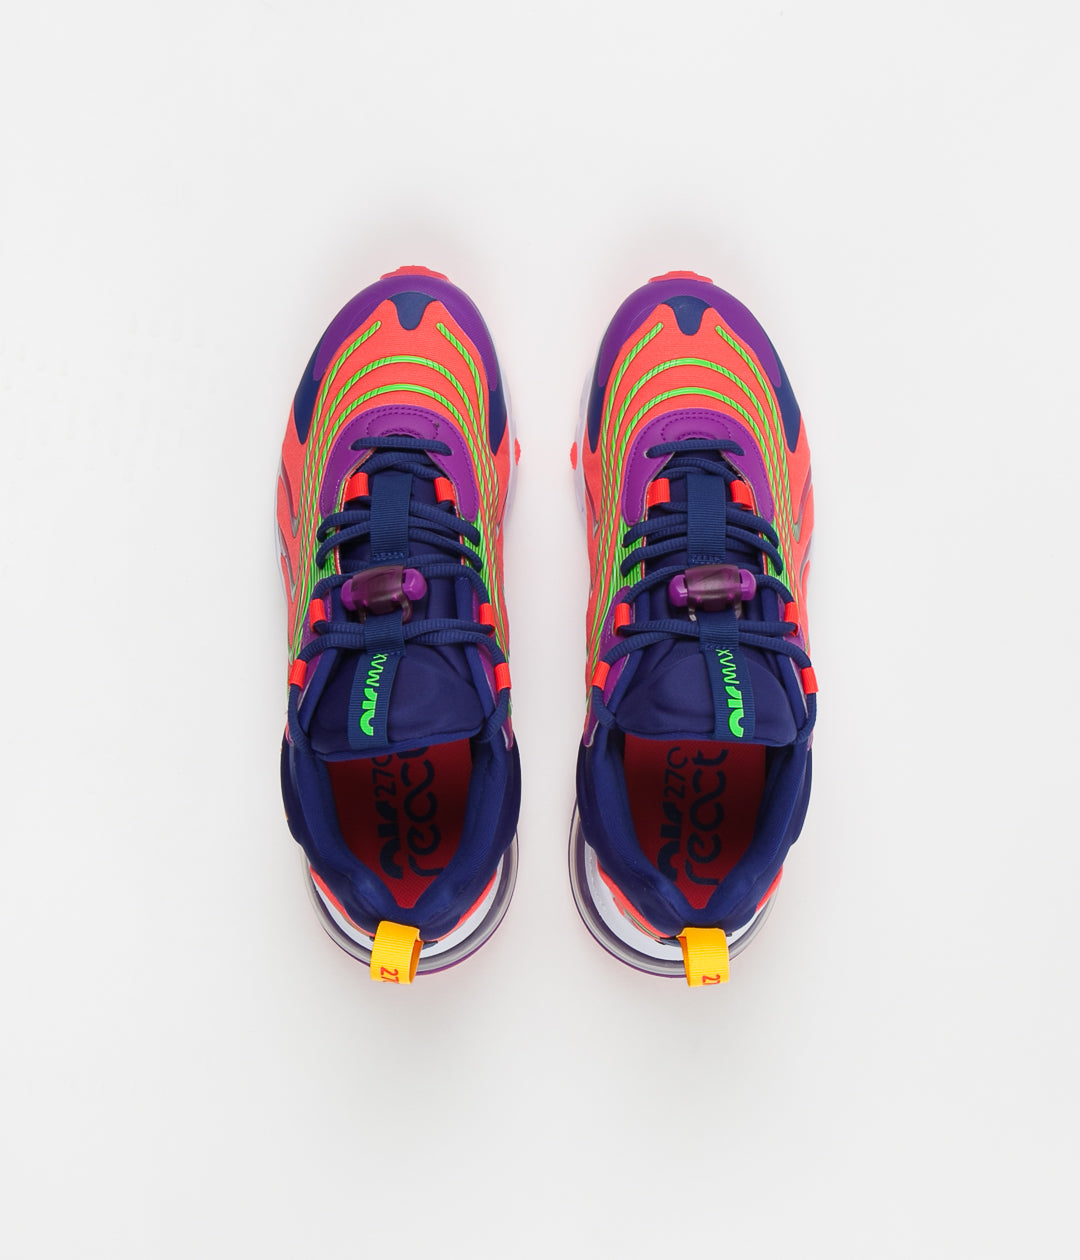 Nike Air Max 270 React Eng Men's Shoes Laser Crimson-Orange-Purple  cd0113-600 